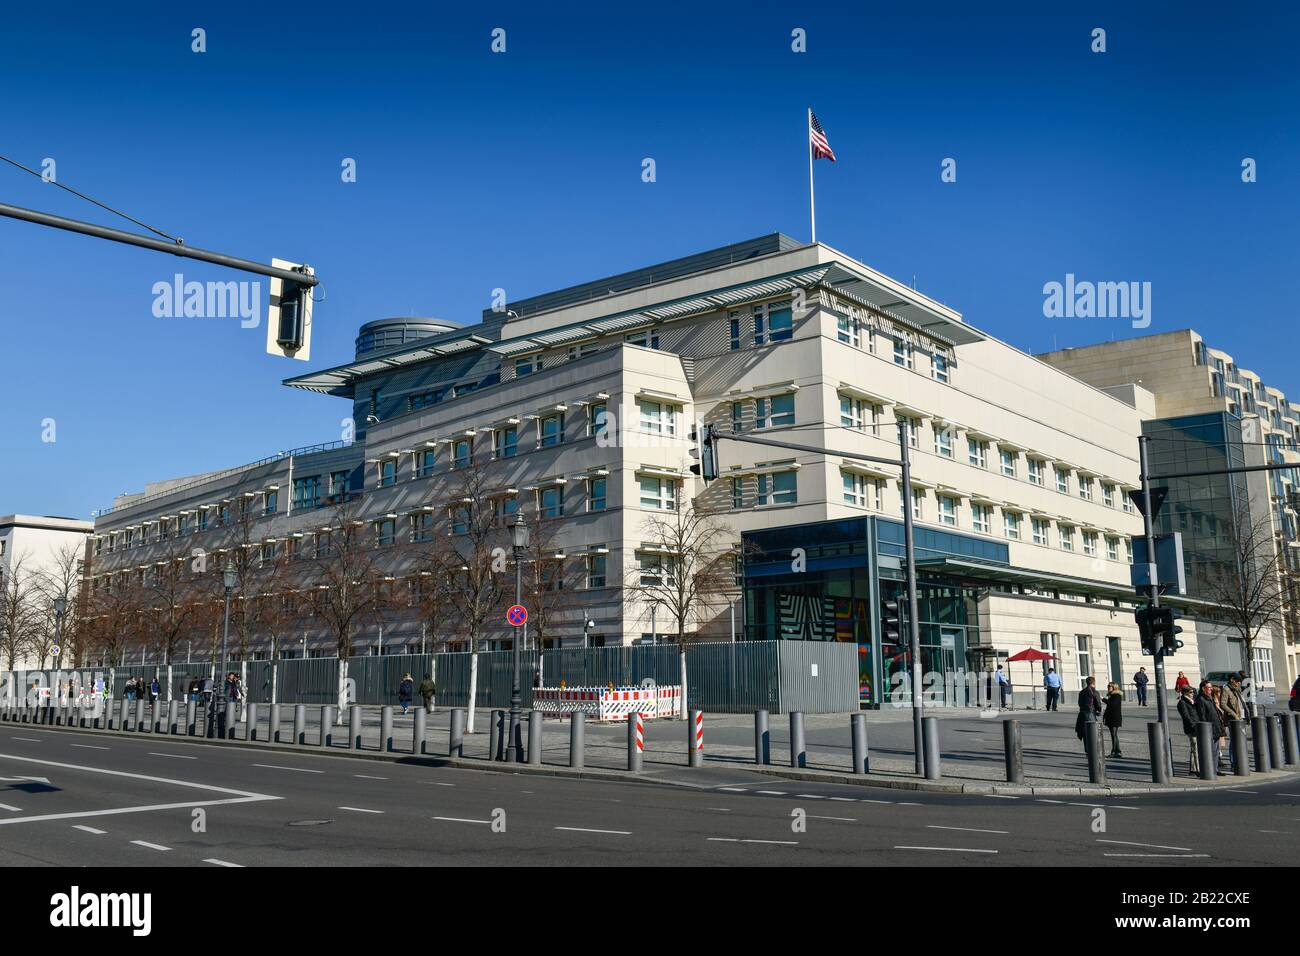 Botschaft Der Vereinigten Staaten Von Amerika, Ebertstraße, Mitte, Berlin, Deutschland Banque D'Images